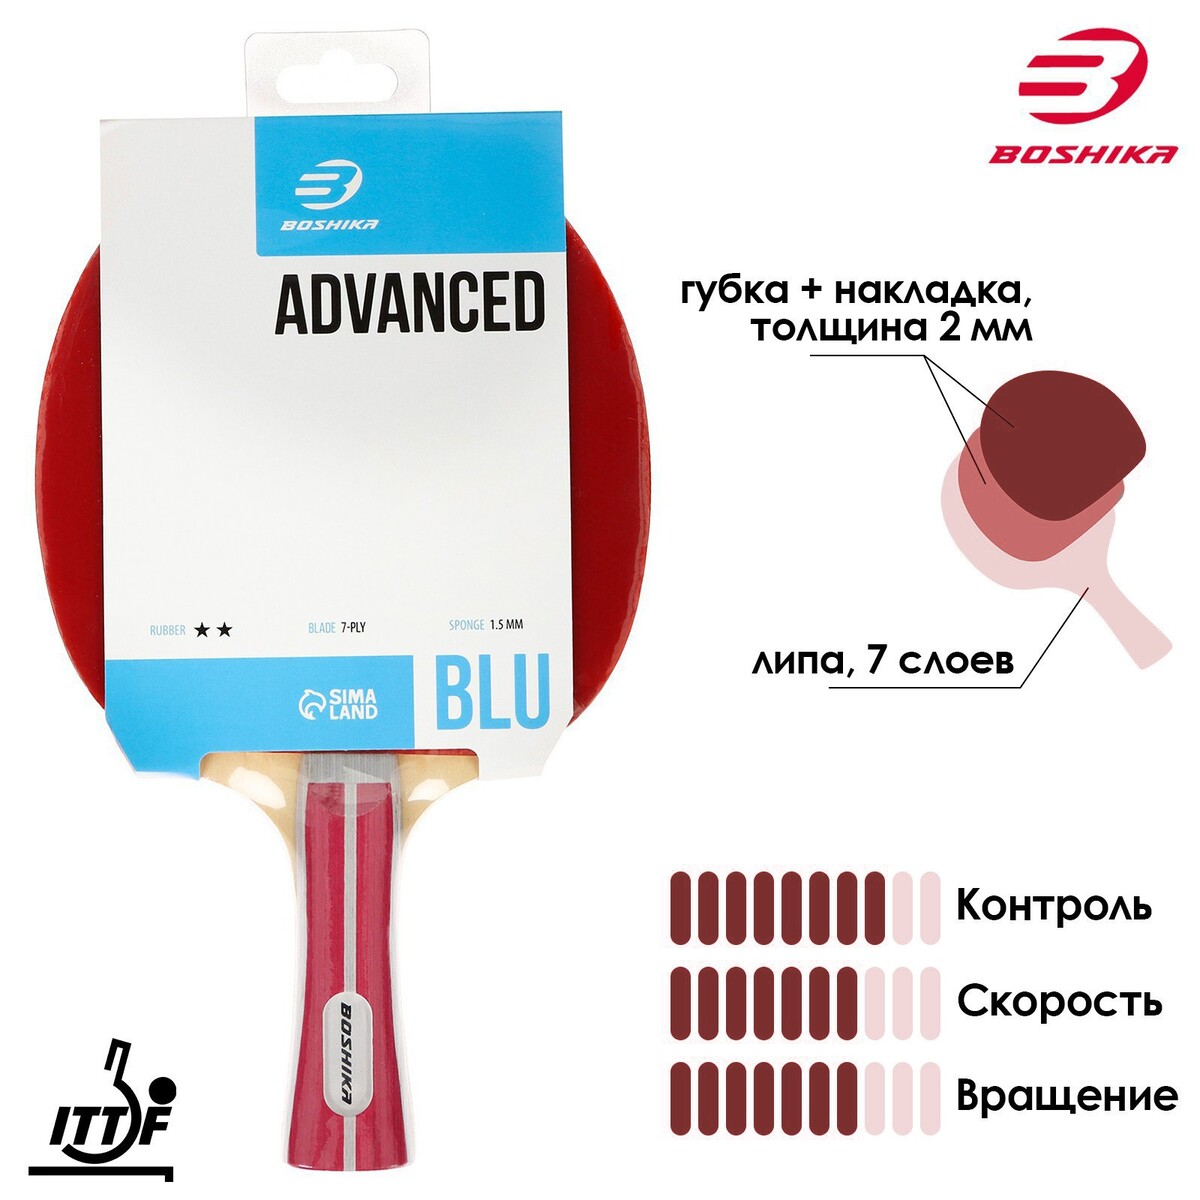 Ракетка для настольного тенниса boshika advanced 2*, для любителей, накладка double fish 815 1.5 мм, коническая ручка мячи для настольного тенниса atemi 1 оранжевый 6 шт